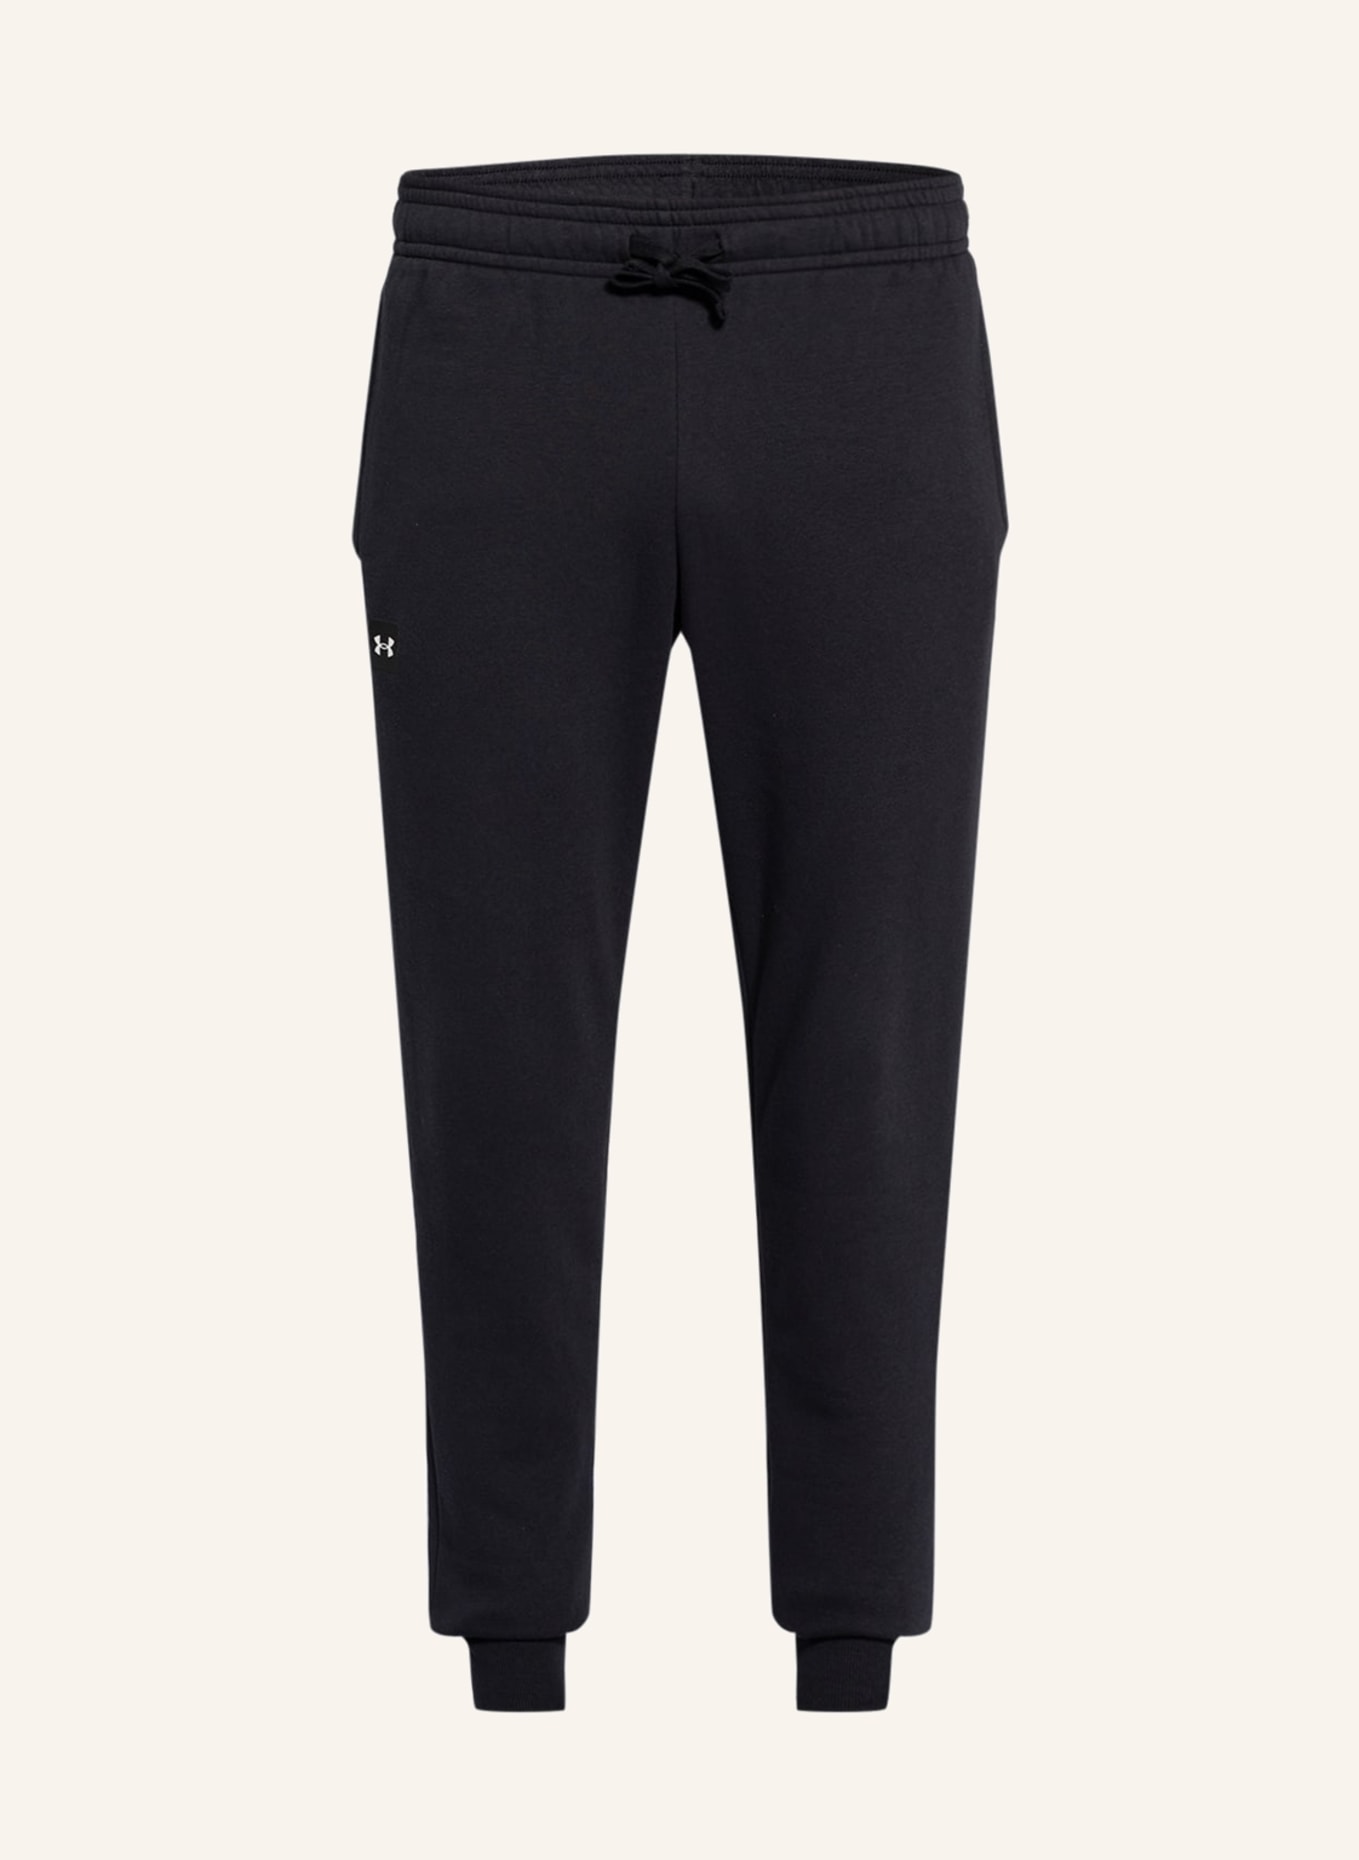 UNDER ARMOUR Sweatpants RIVAL, Color: BLACK (Image 1)